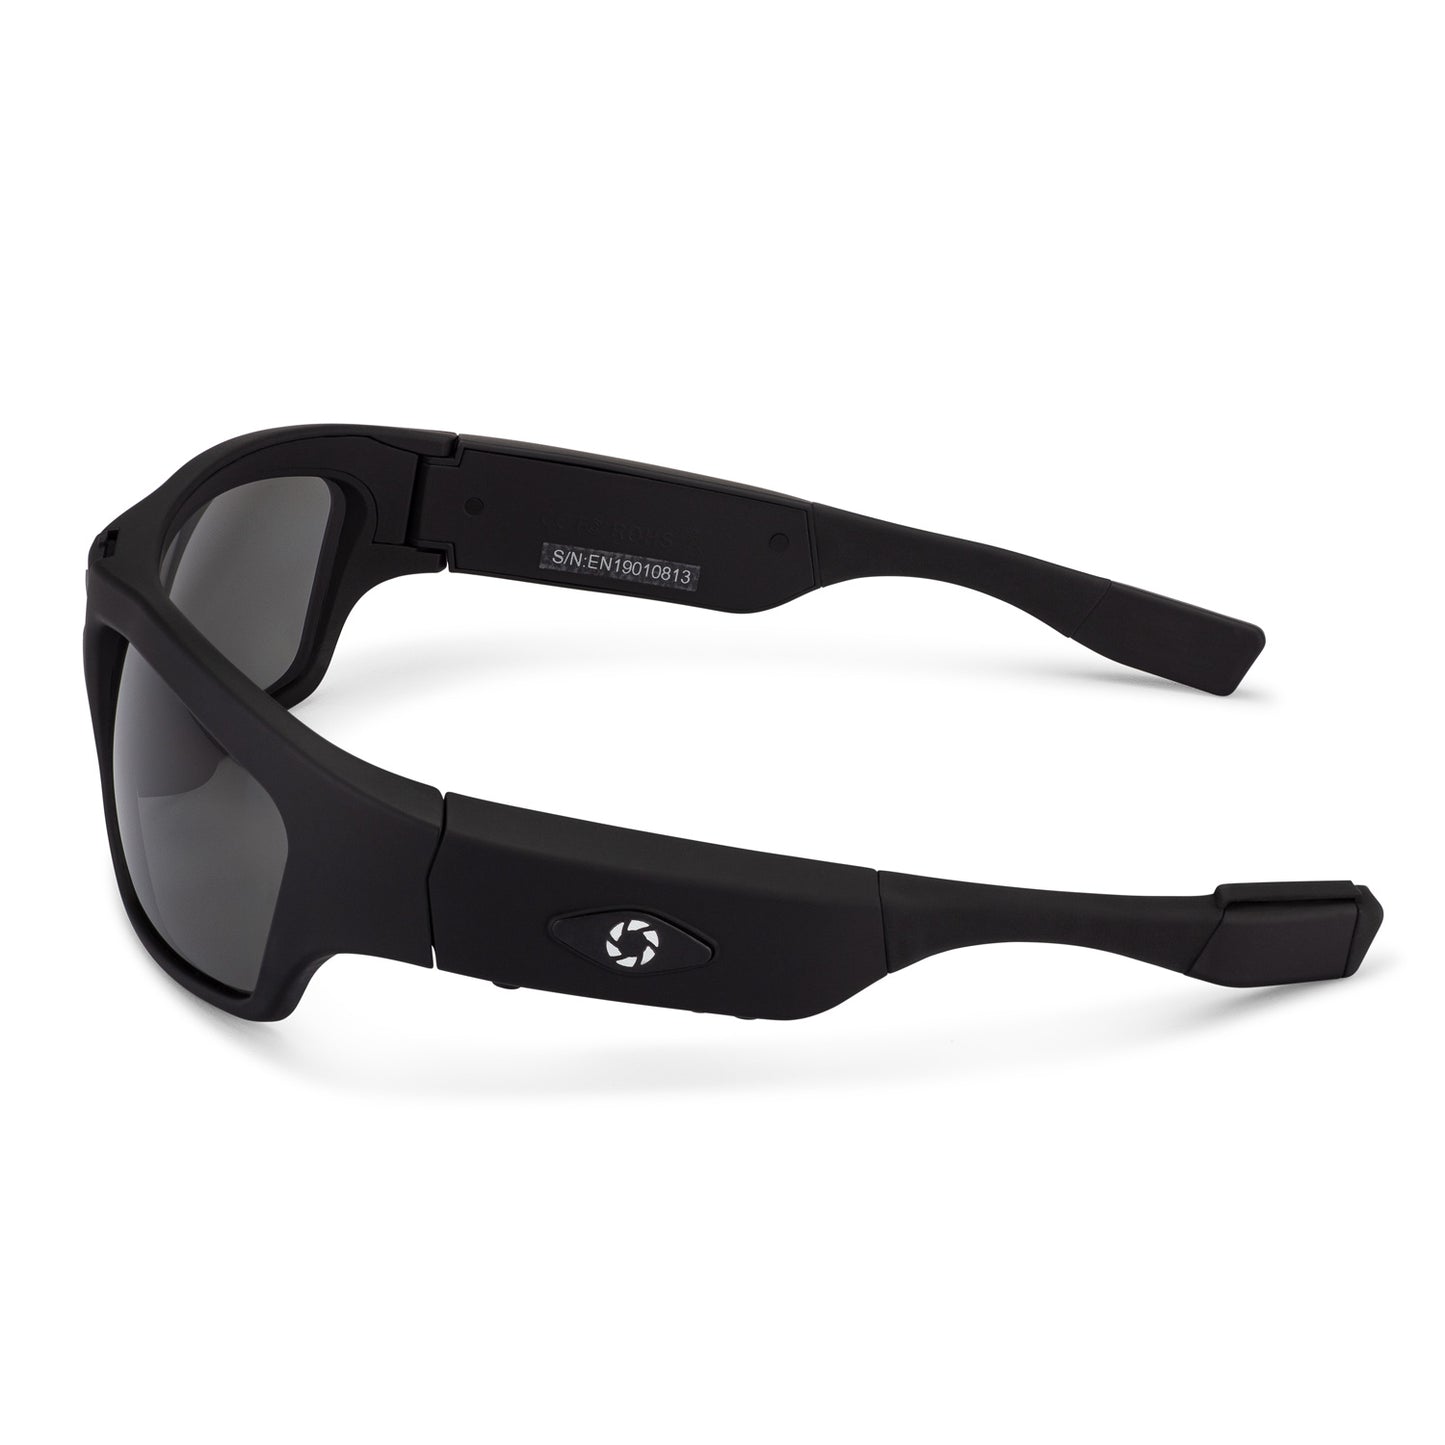 iVUE Denali Camera Glasses, POV video recording sunglasses